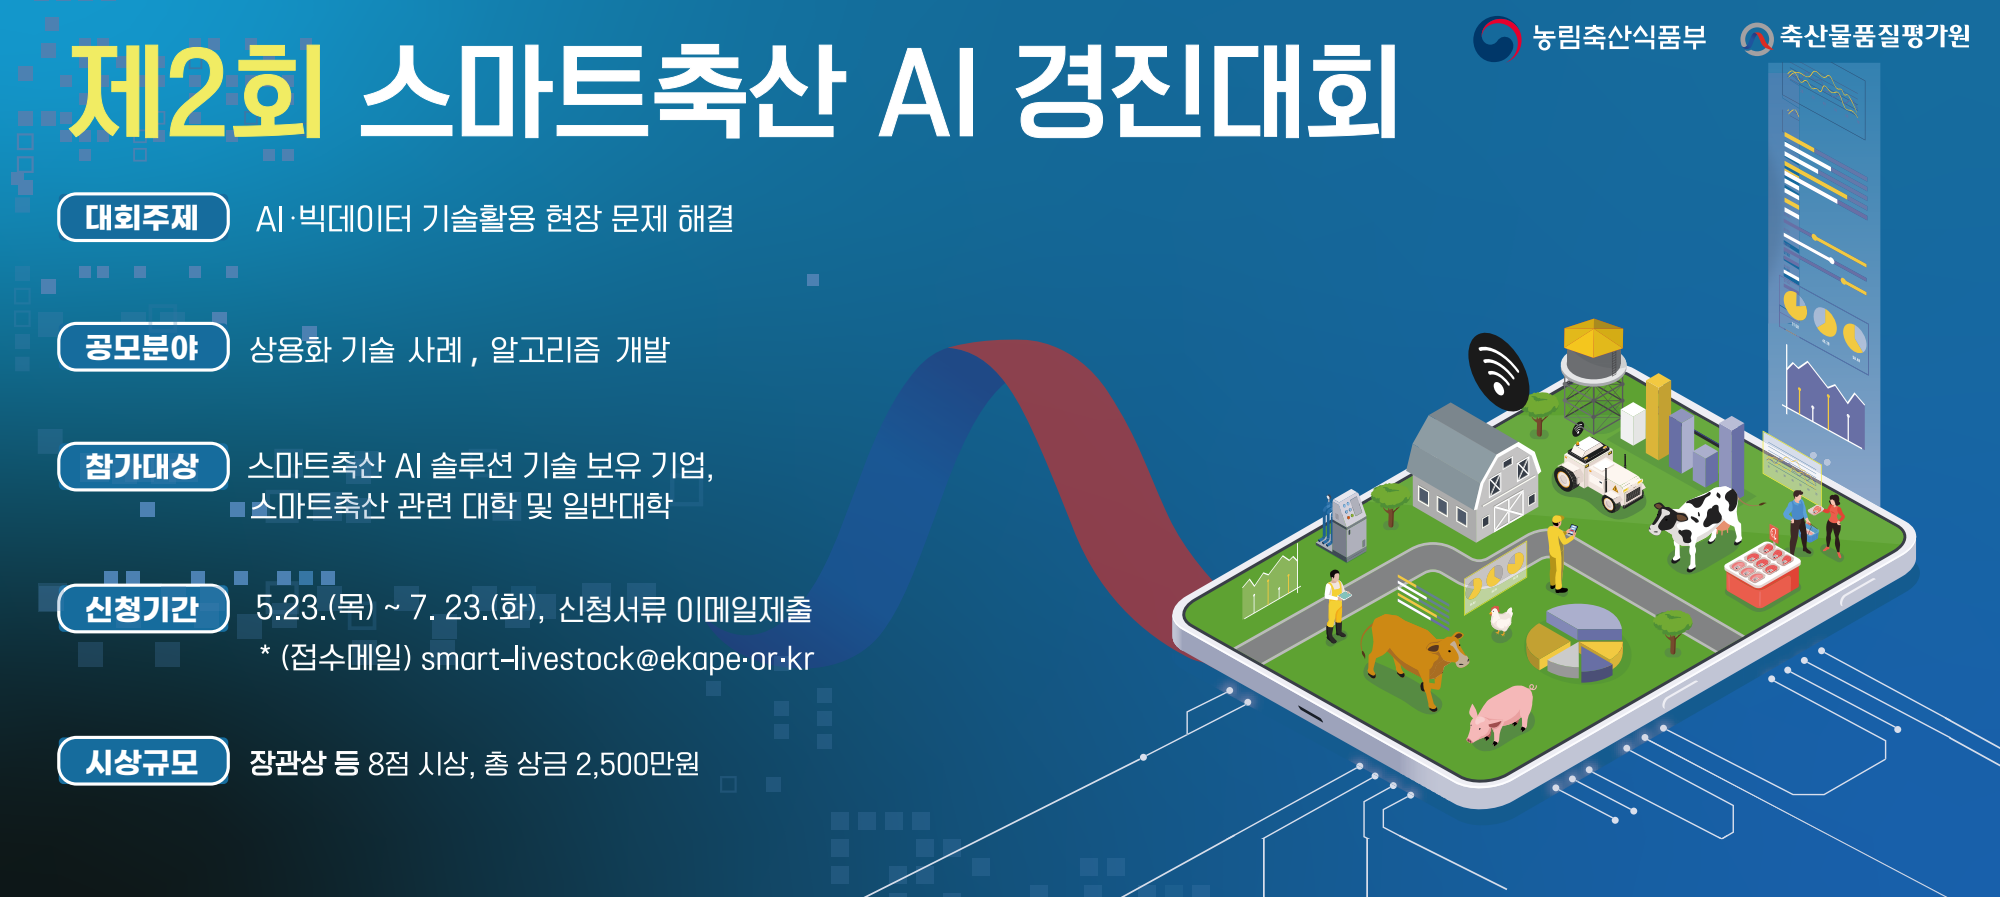 제2회 스마트축산 ai경진대회

~2024. 7. 23.(화)